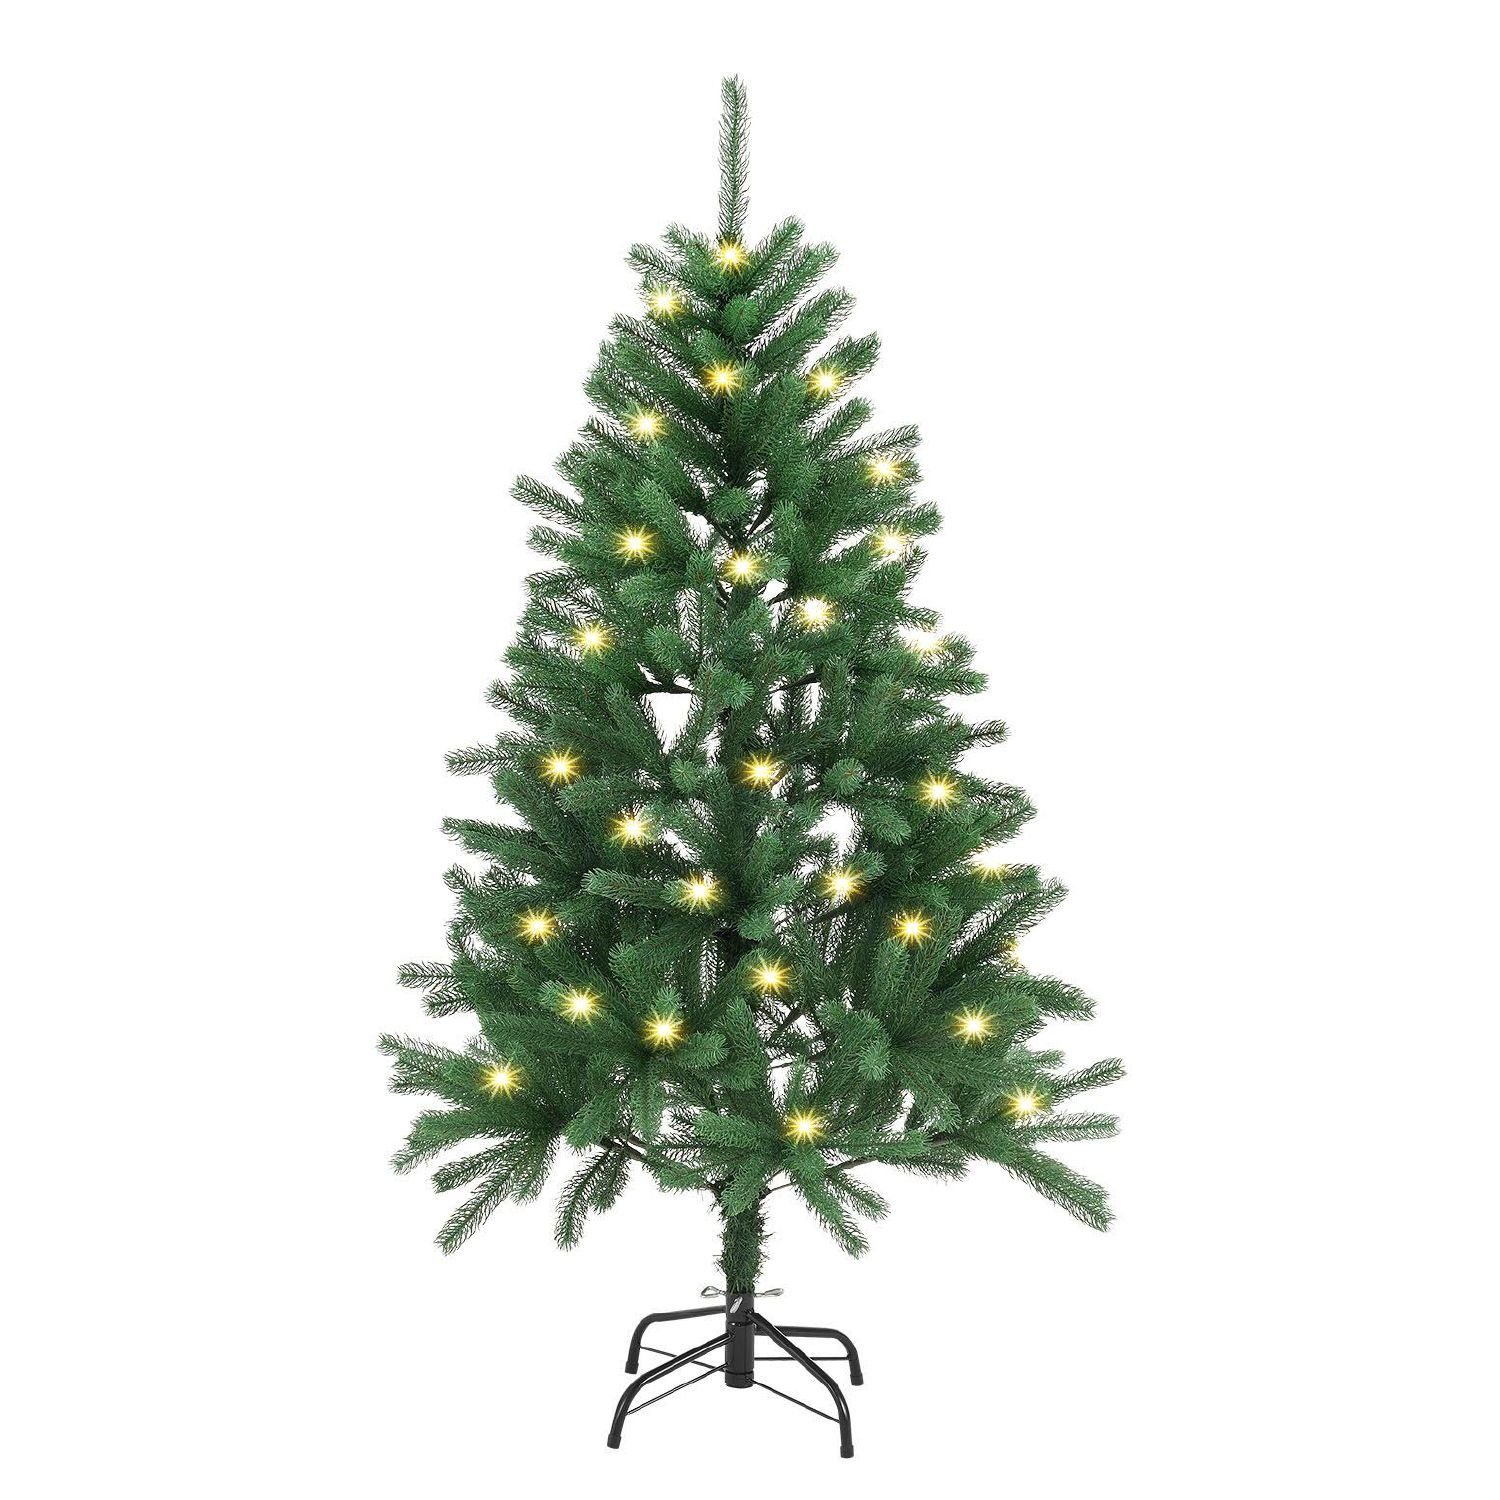 Juskys Künstlicher Weihnachtsbaum, Weihnachtsbaum, langlebig und platzsparend, mit LED-Lichtkette, inkl. Metall-Ständer